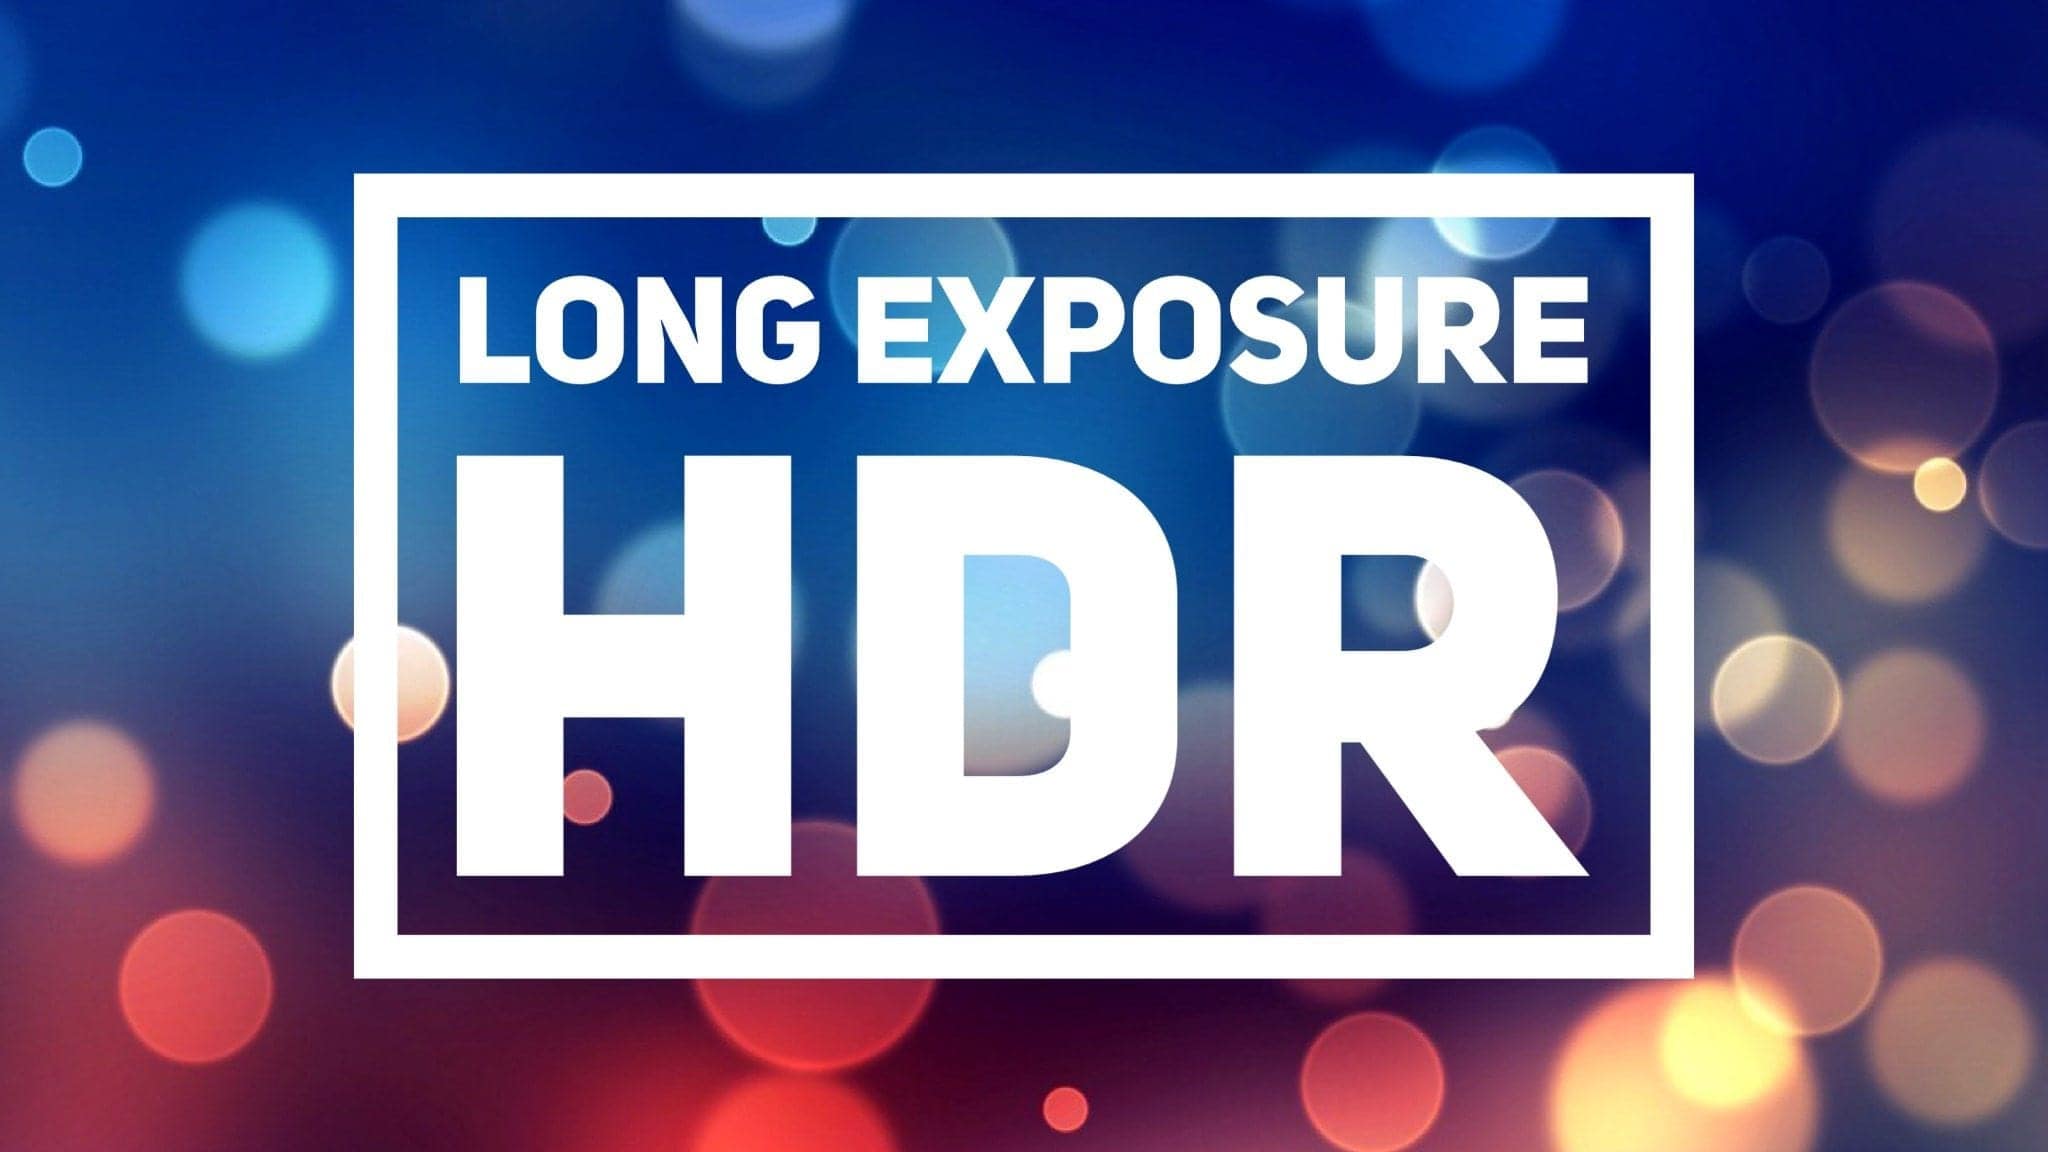 Long Exposure HDR